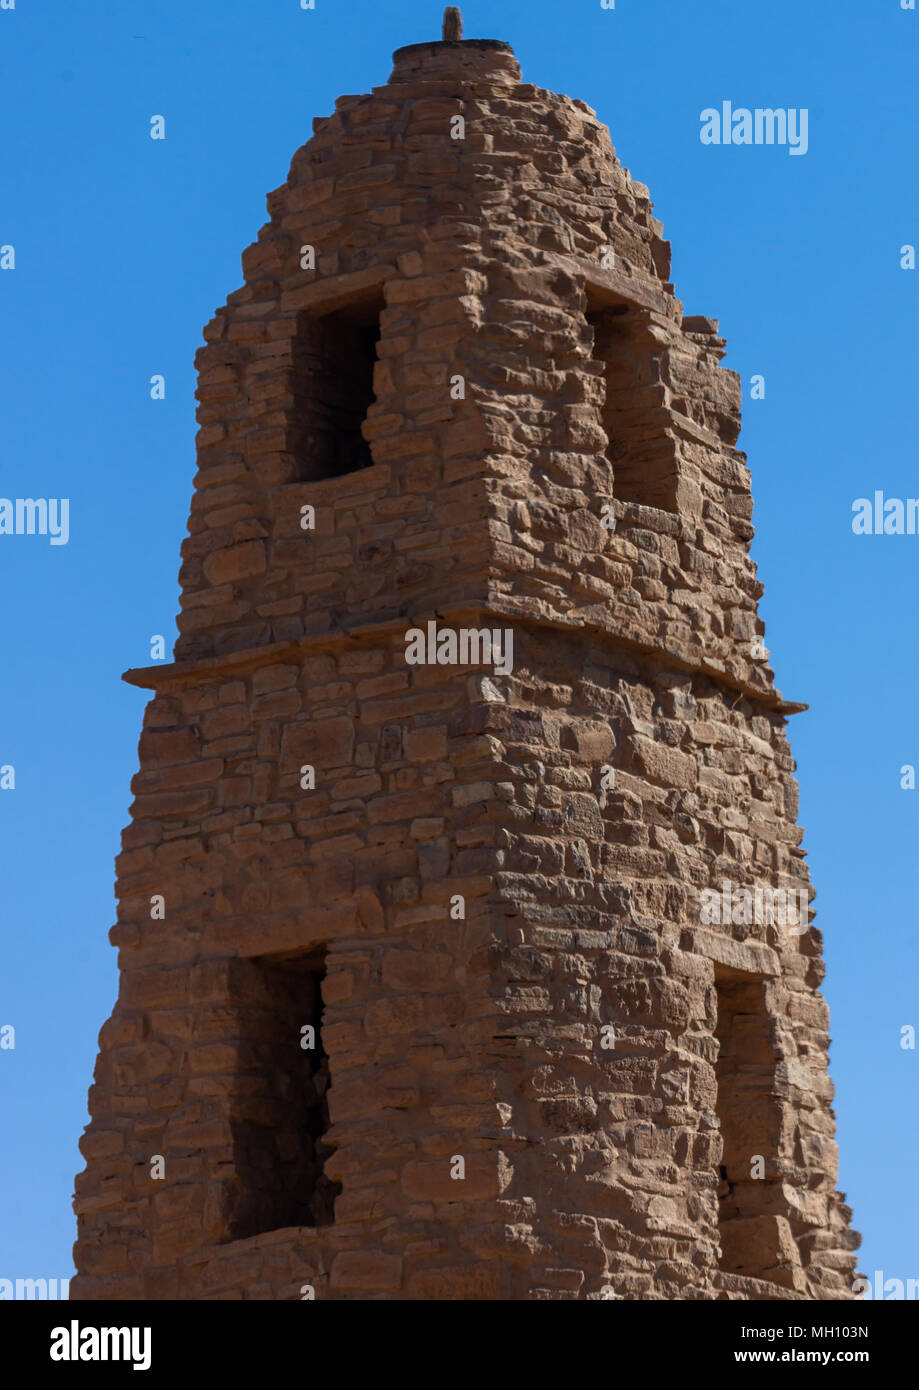 Omar ibn al-khattab mosque minaret, Al-Jawf Province, Dumat Al-Jandal, Saudi Arabia Stock Photo